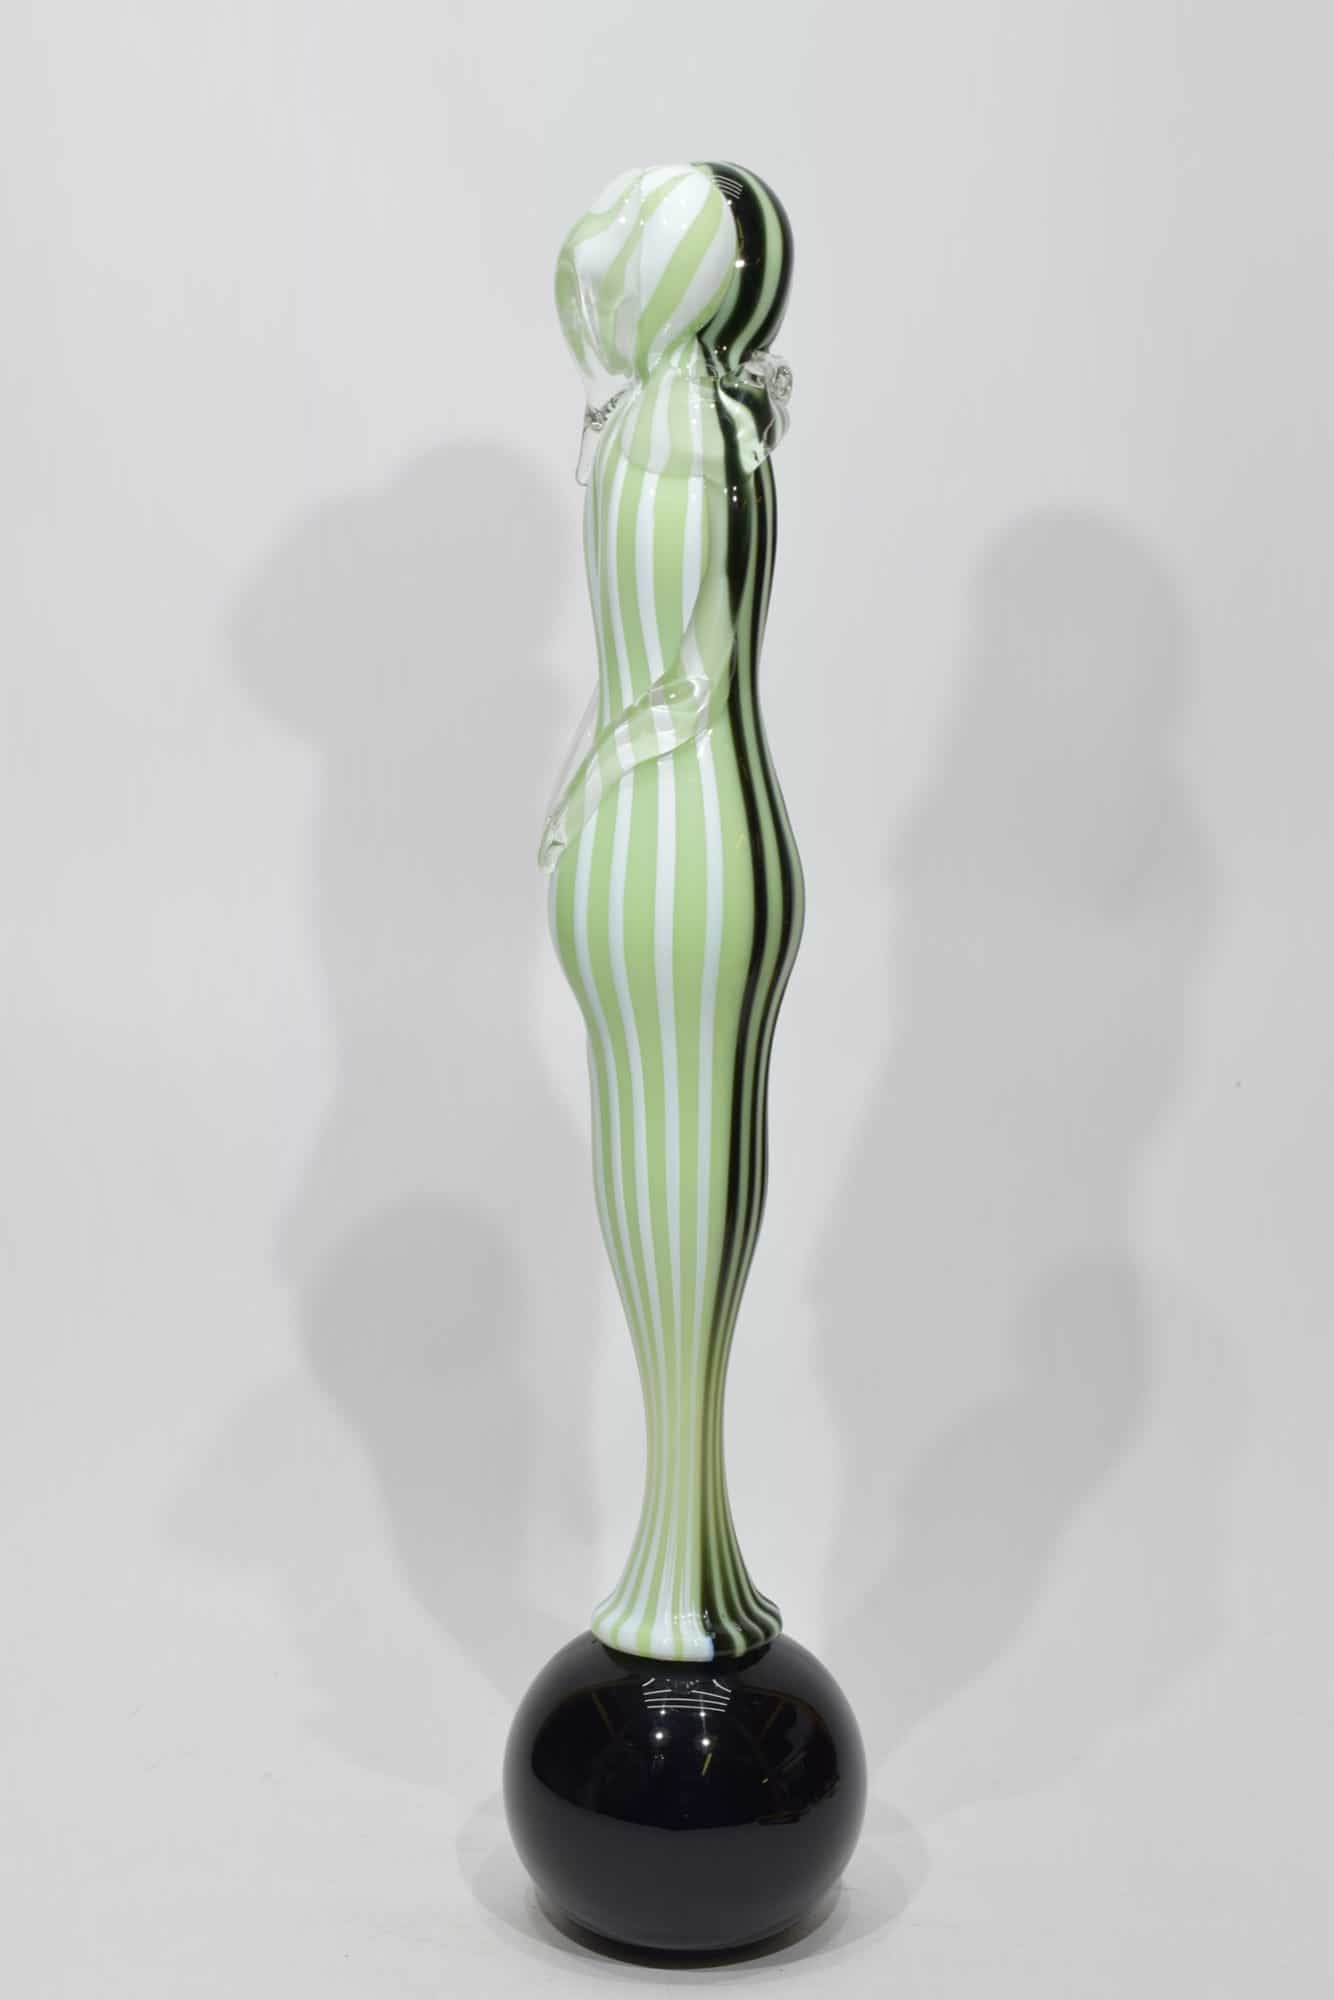 sculpture-lovers-watermark-glass-Murano-glass-10607